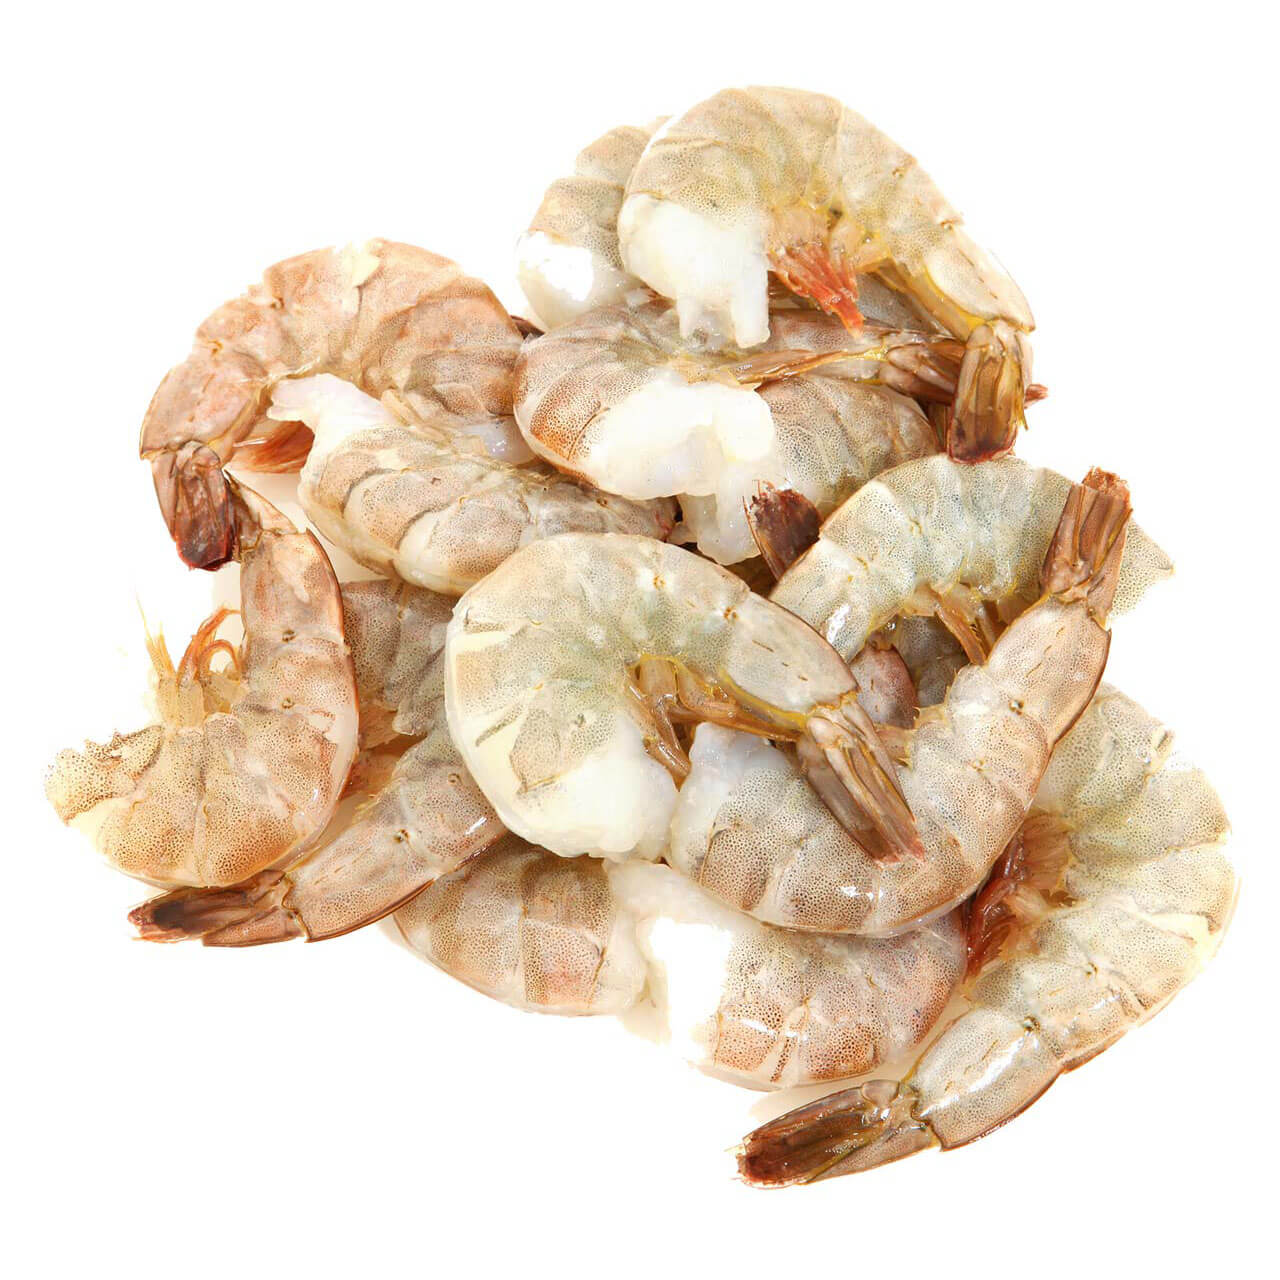 Shell On Shrimp